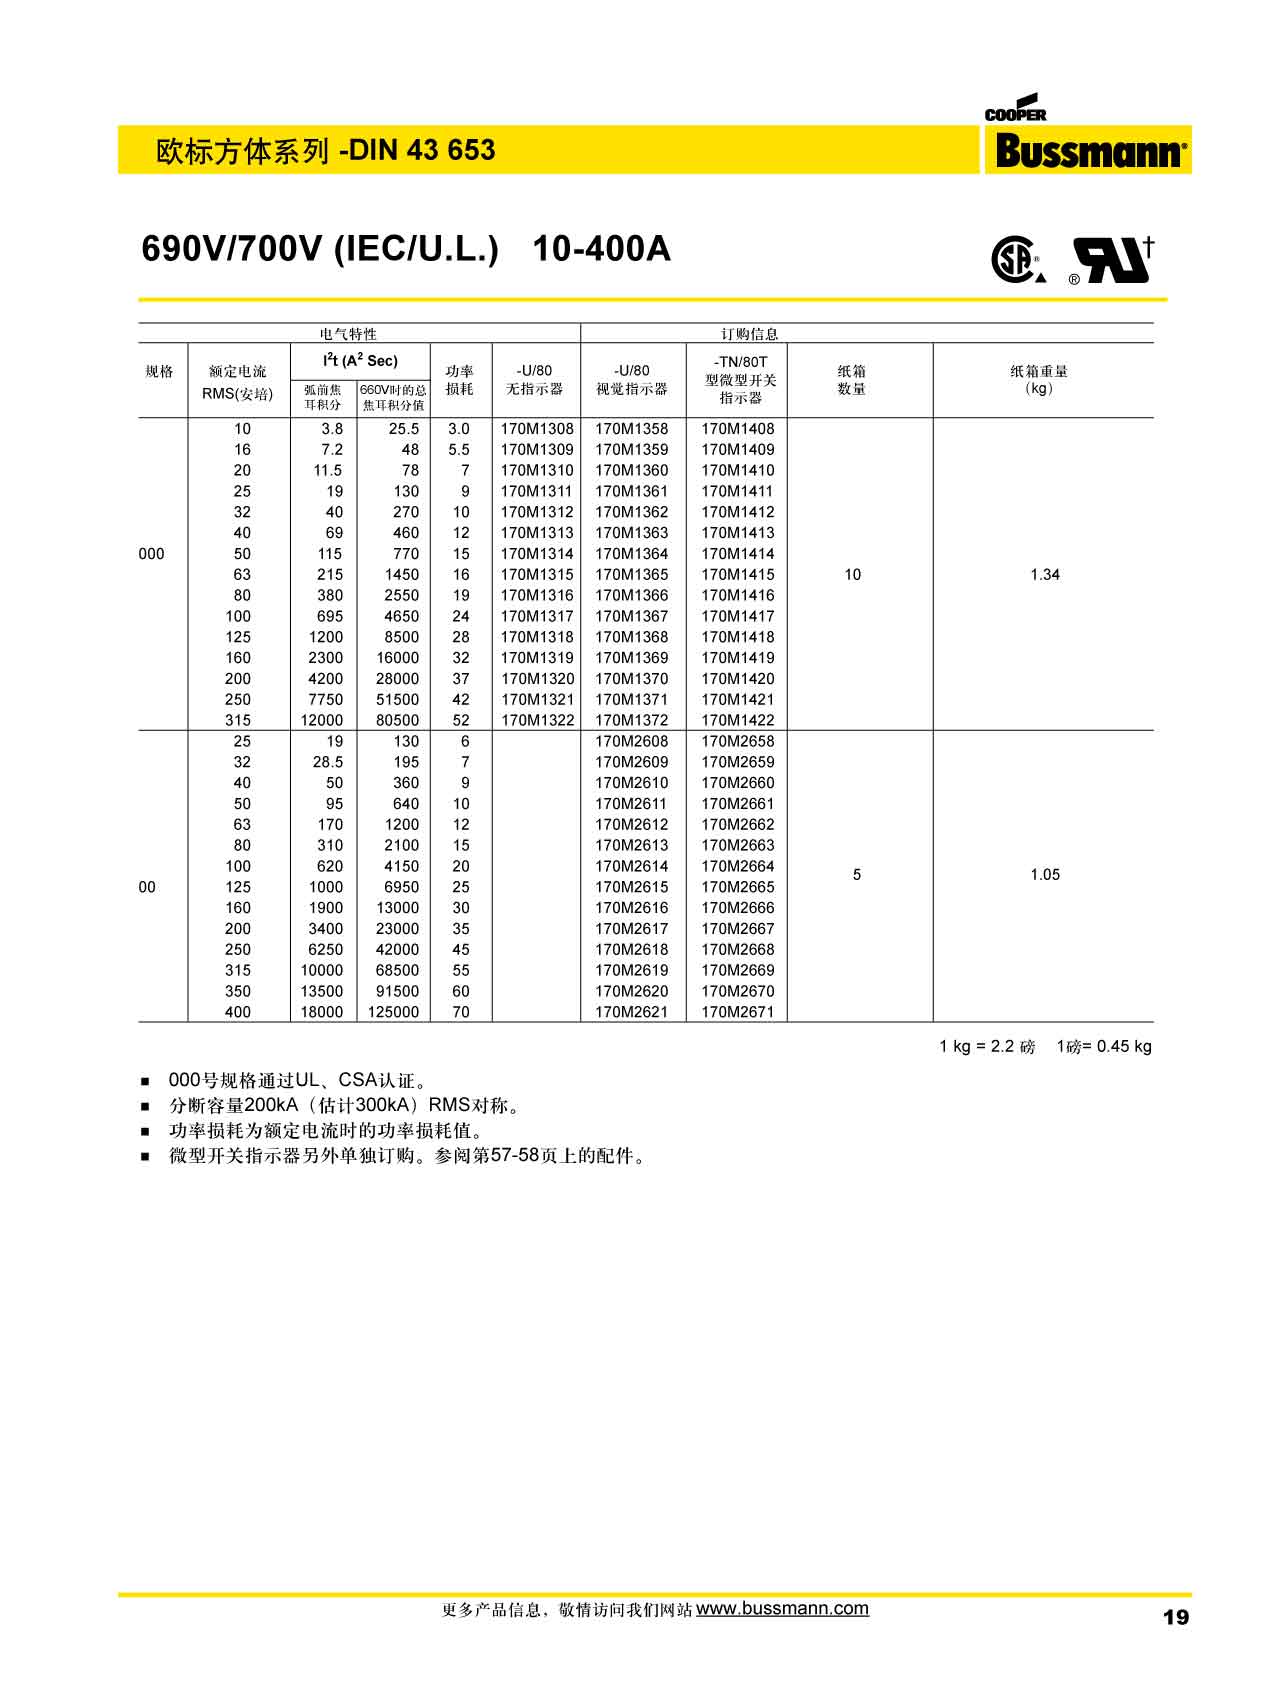 歐標方體DIN43653 690V 產品選型參數